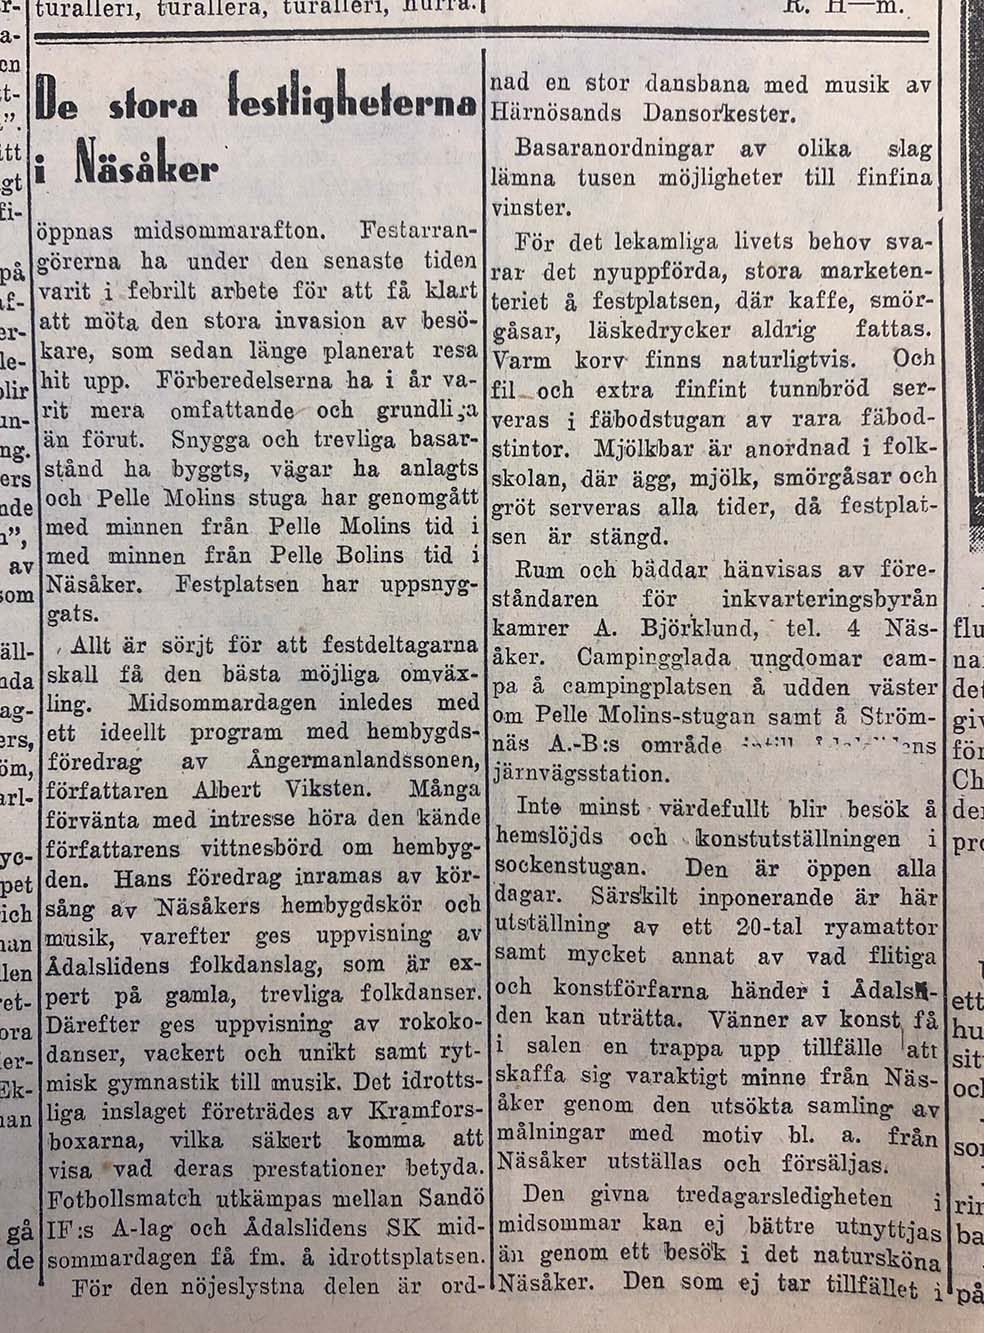 "De stora festligheterna i Näsåker", Västernorrlands Allehanda den 21 juni 1938